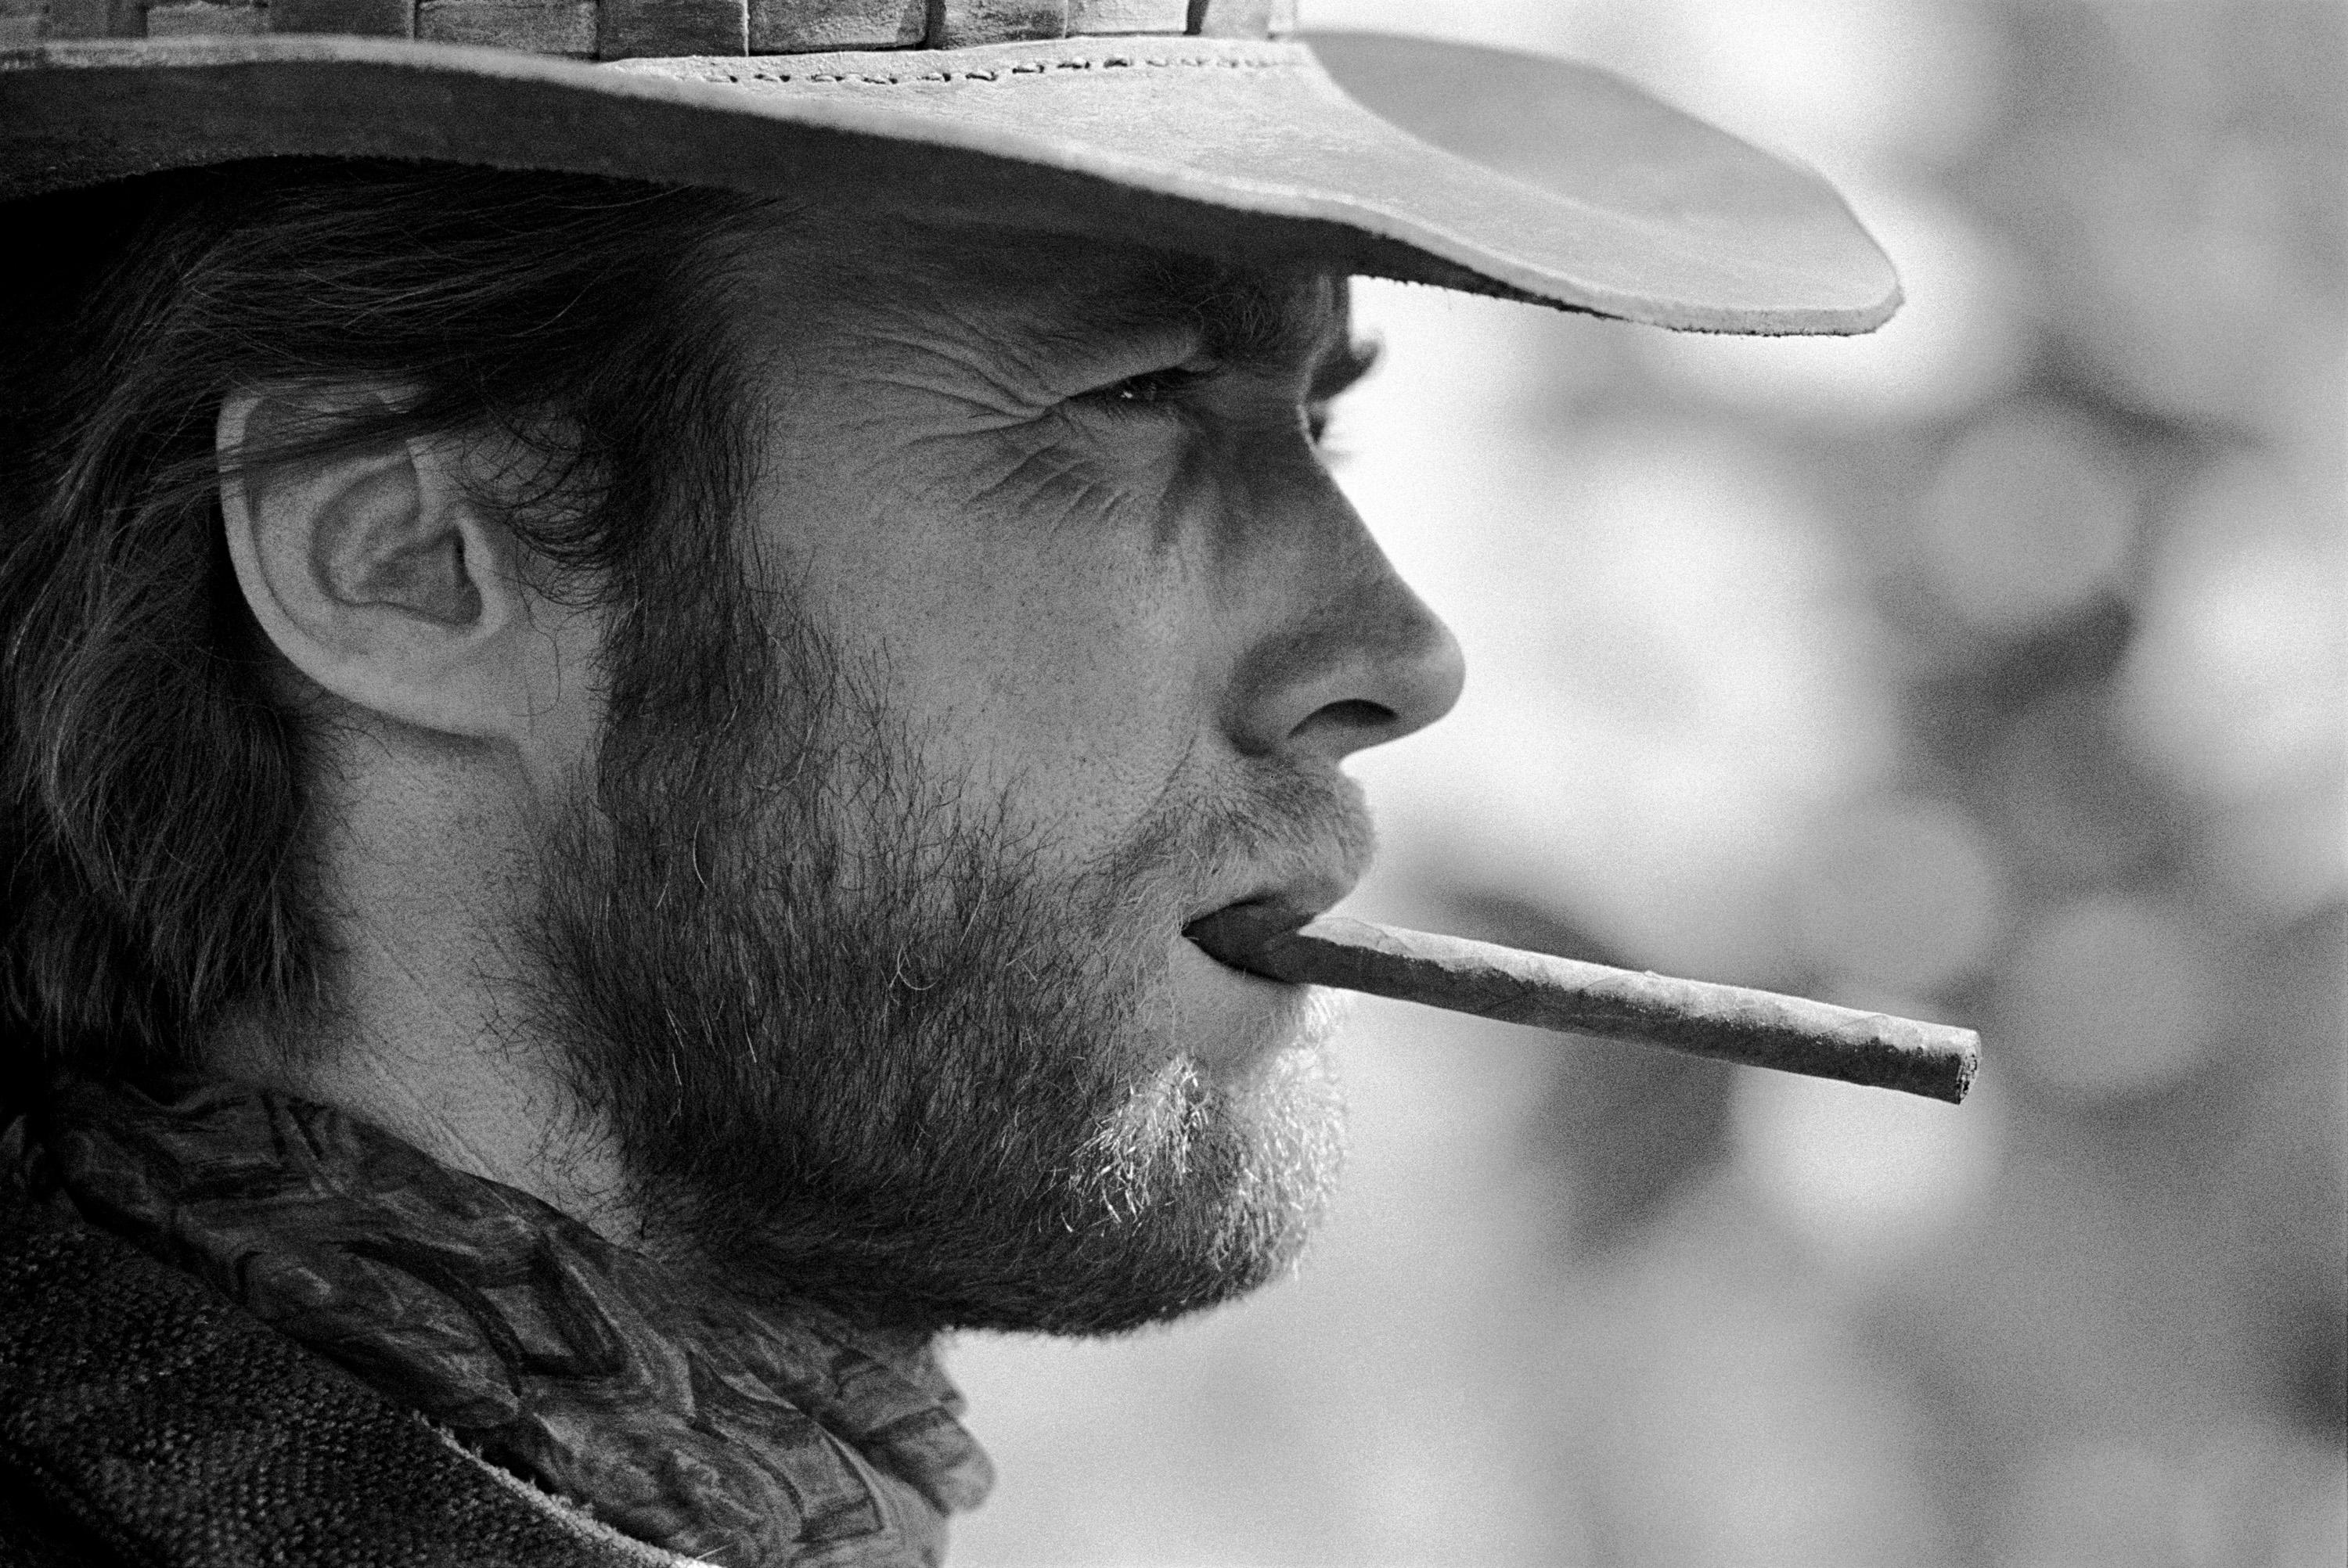 "Clint Eastwood, 1970" du photographe américain Lawrence Schiller. Impression numérique d'archives, EP 3/5. Image : 12.5 x 19 in. / Papier : 16 x 20 pouces. Prise sur le plateau de tournage du film "Two Mules for Sister Sara", cette photographie en